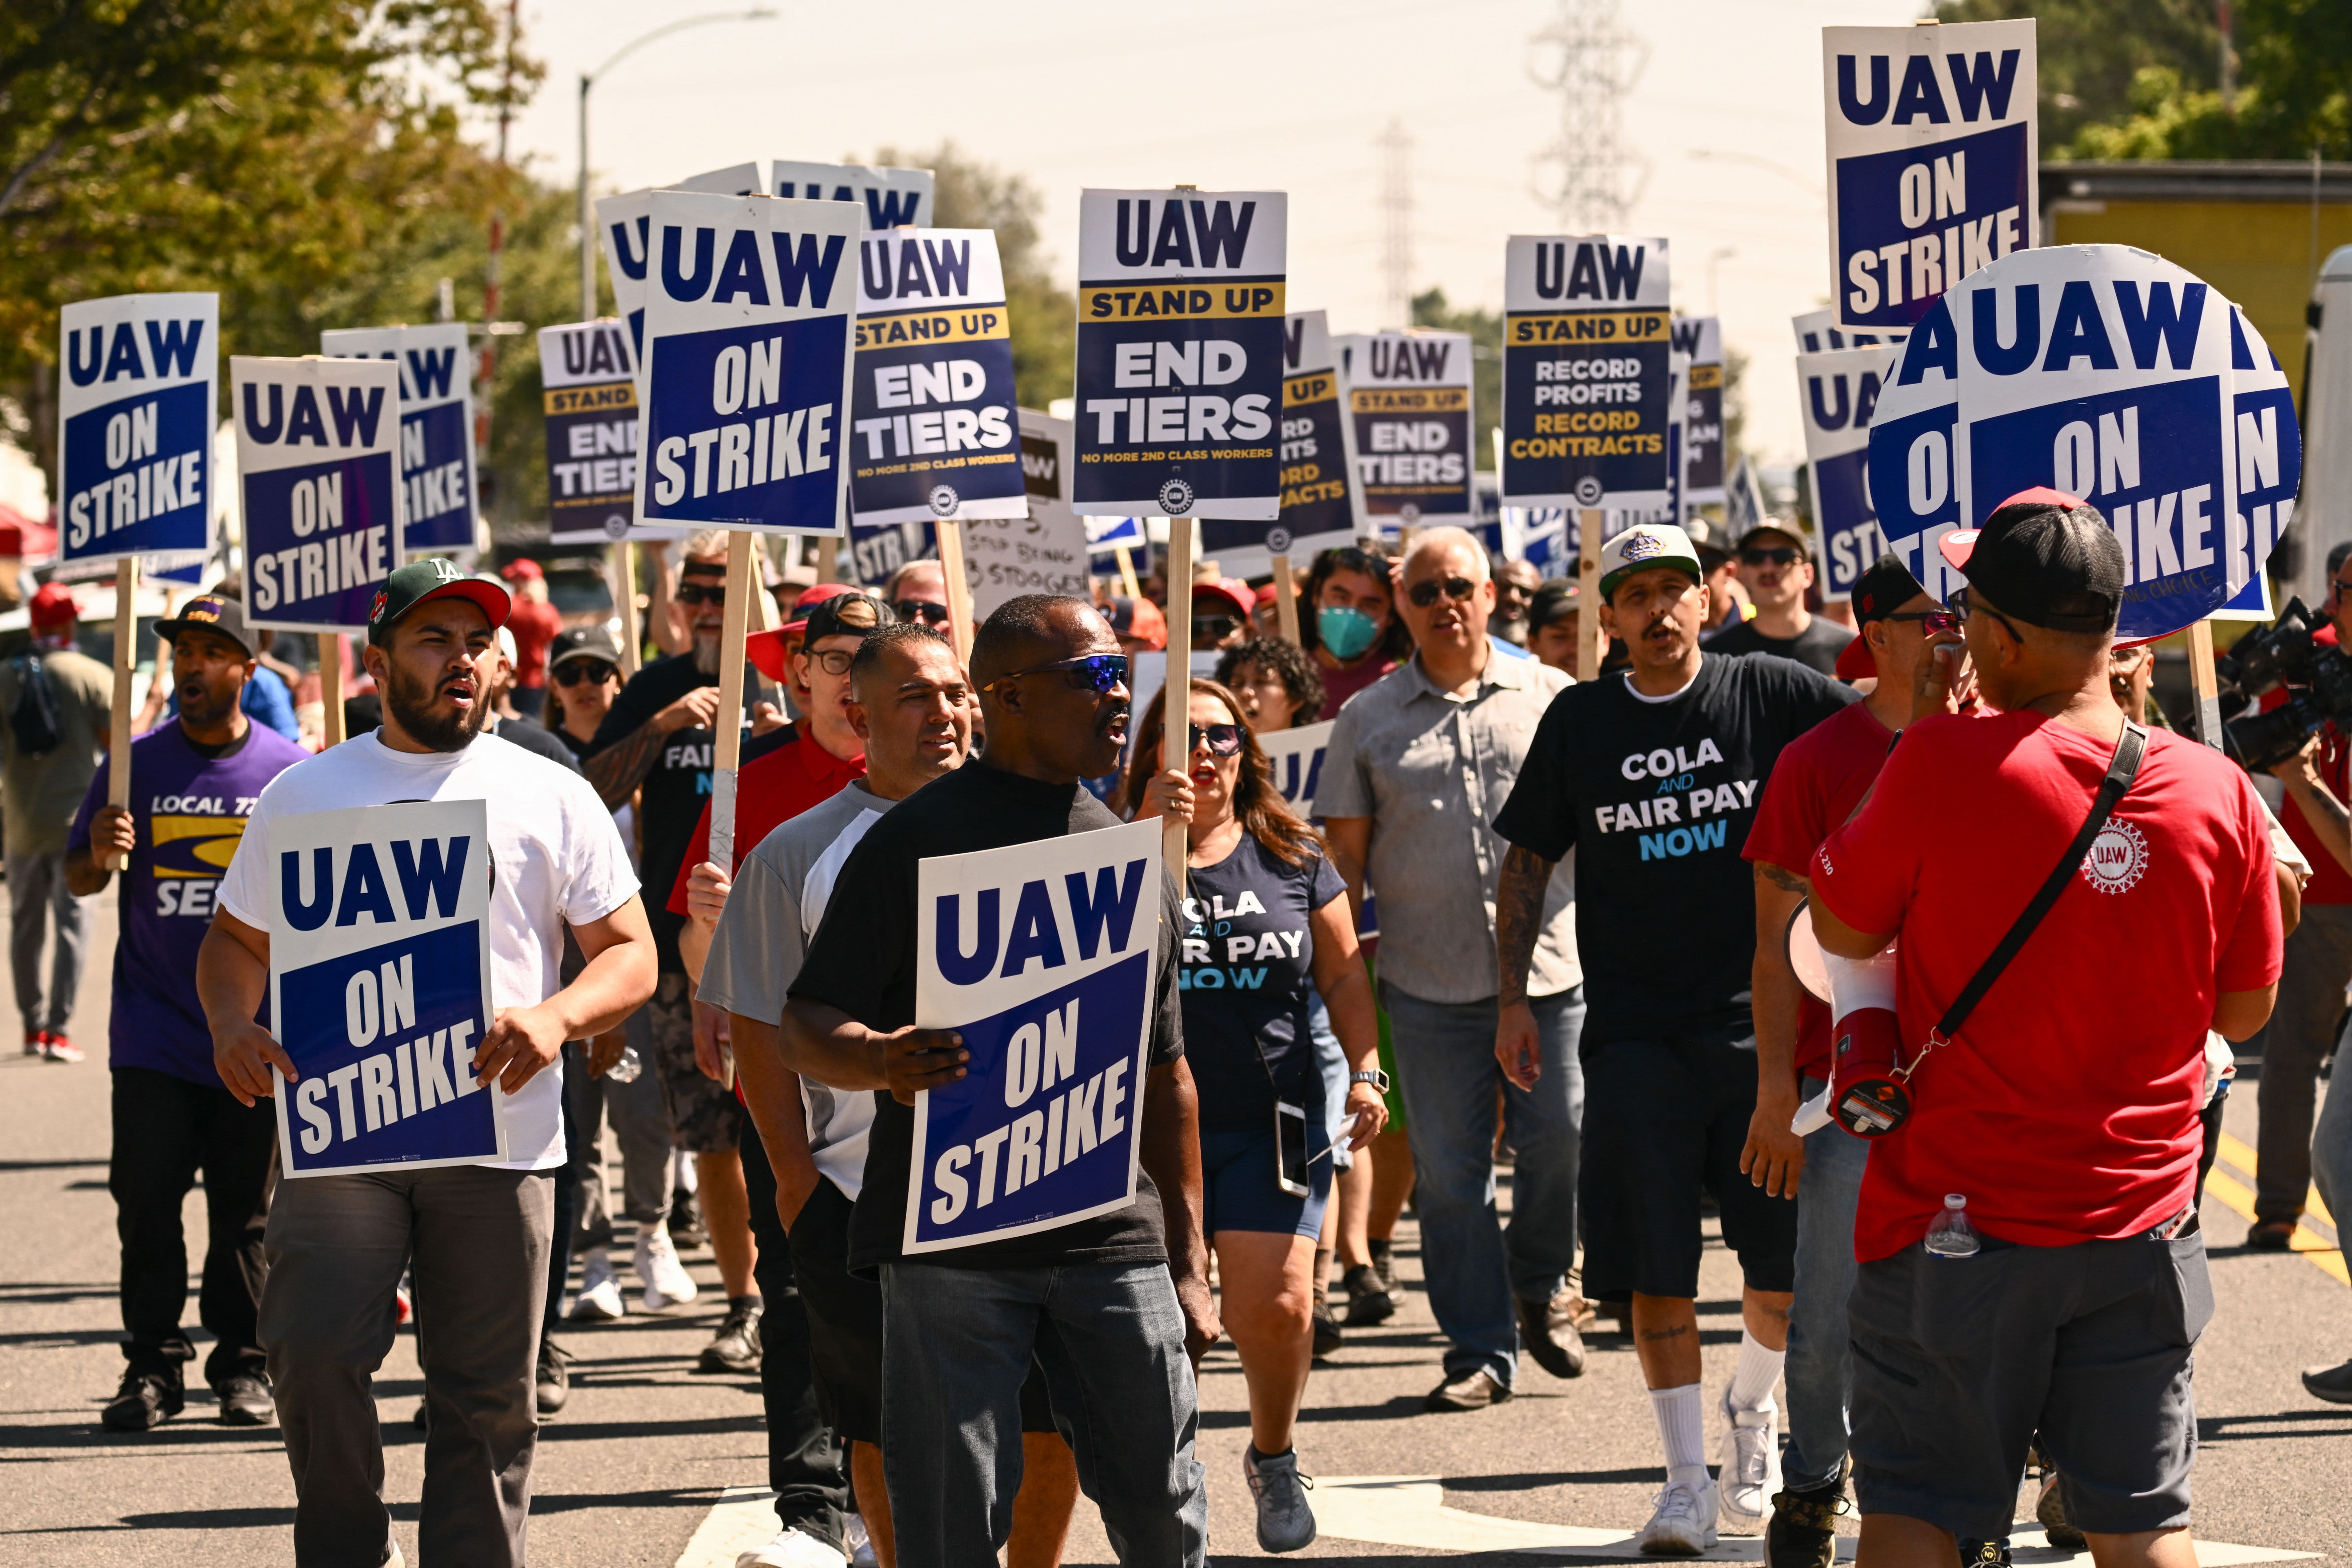 GM и UAW достигли предварительного соглашения о прекращении забастовки